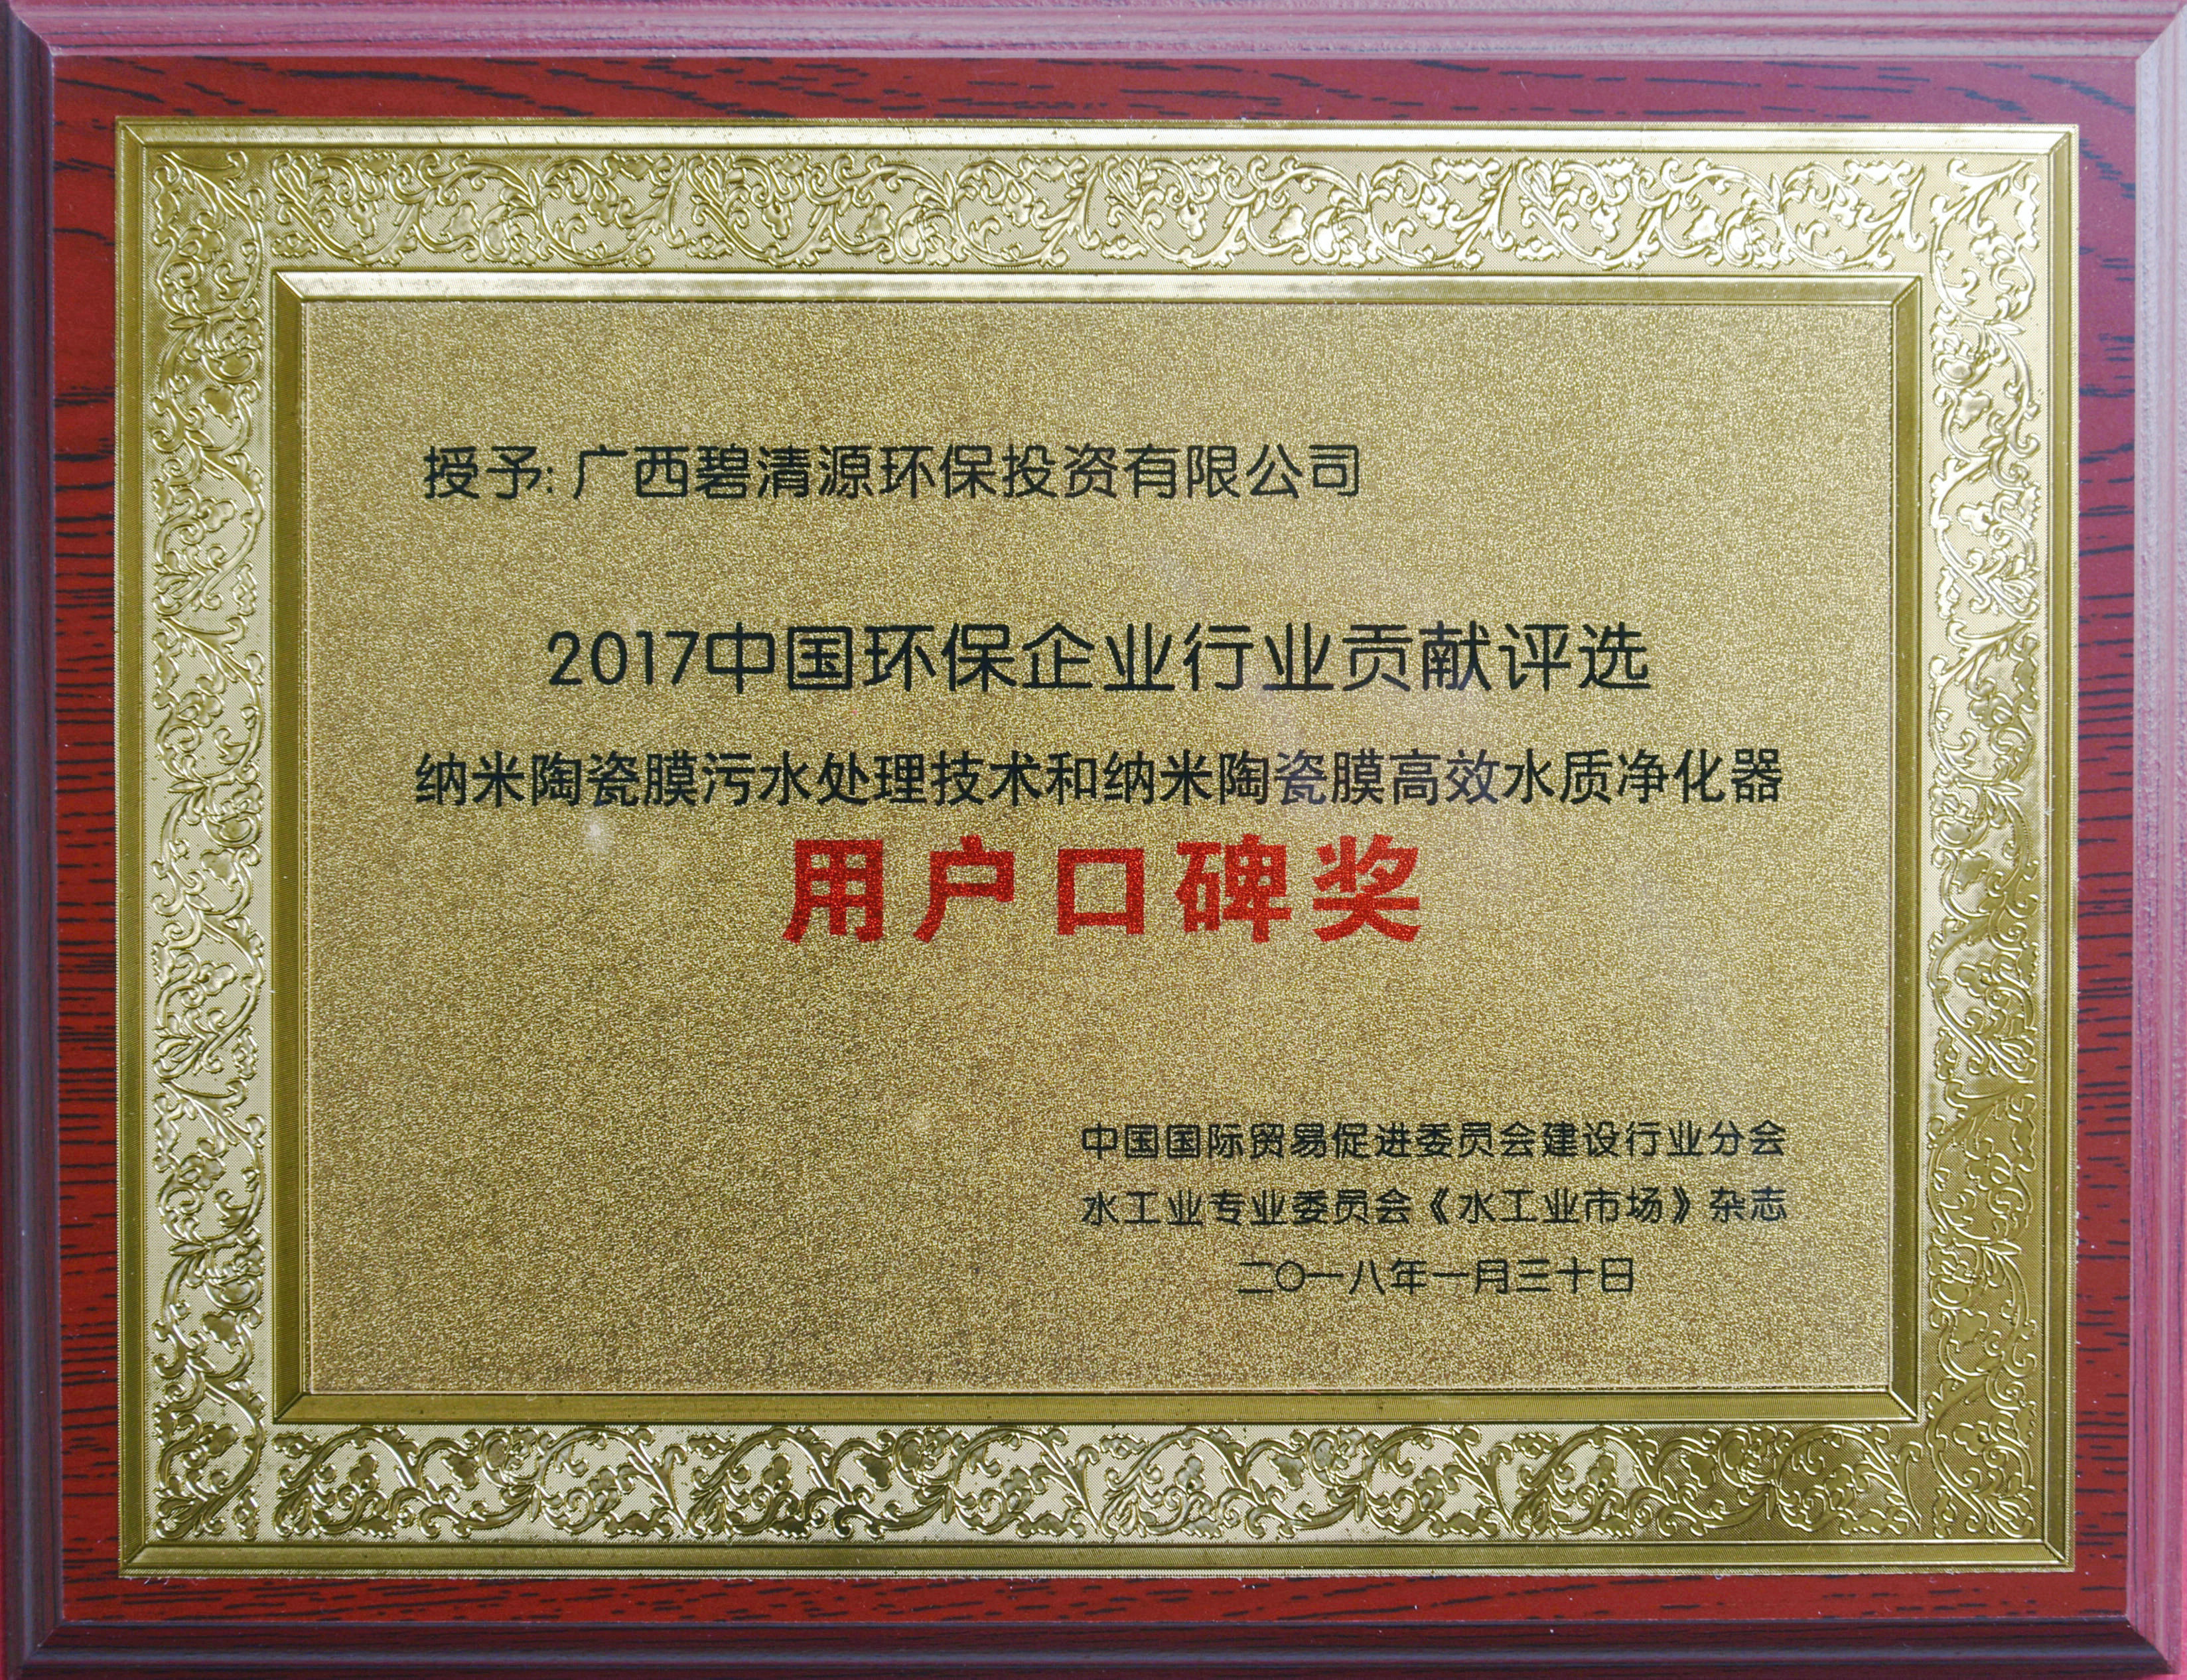 2017中国环保企业行业贡献评选用户口碑奖.JPG